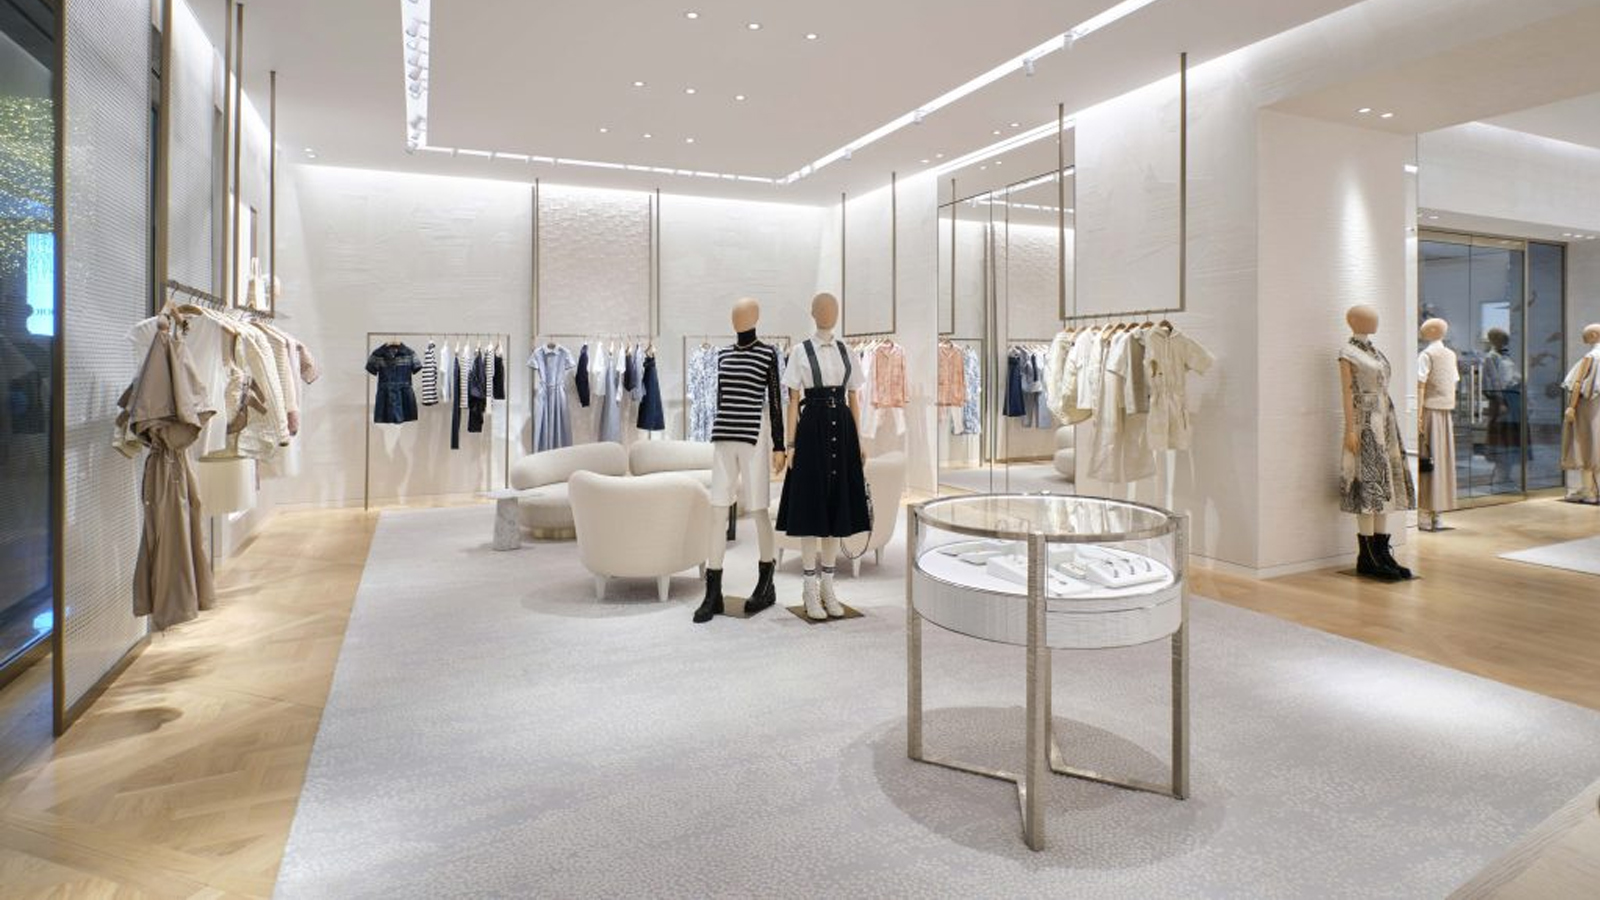 Boutique Dior mới nhất khai trương tin vui cho tín đồ thời trang Hà Nội